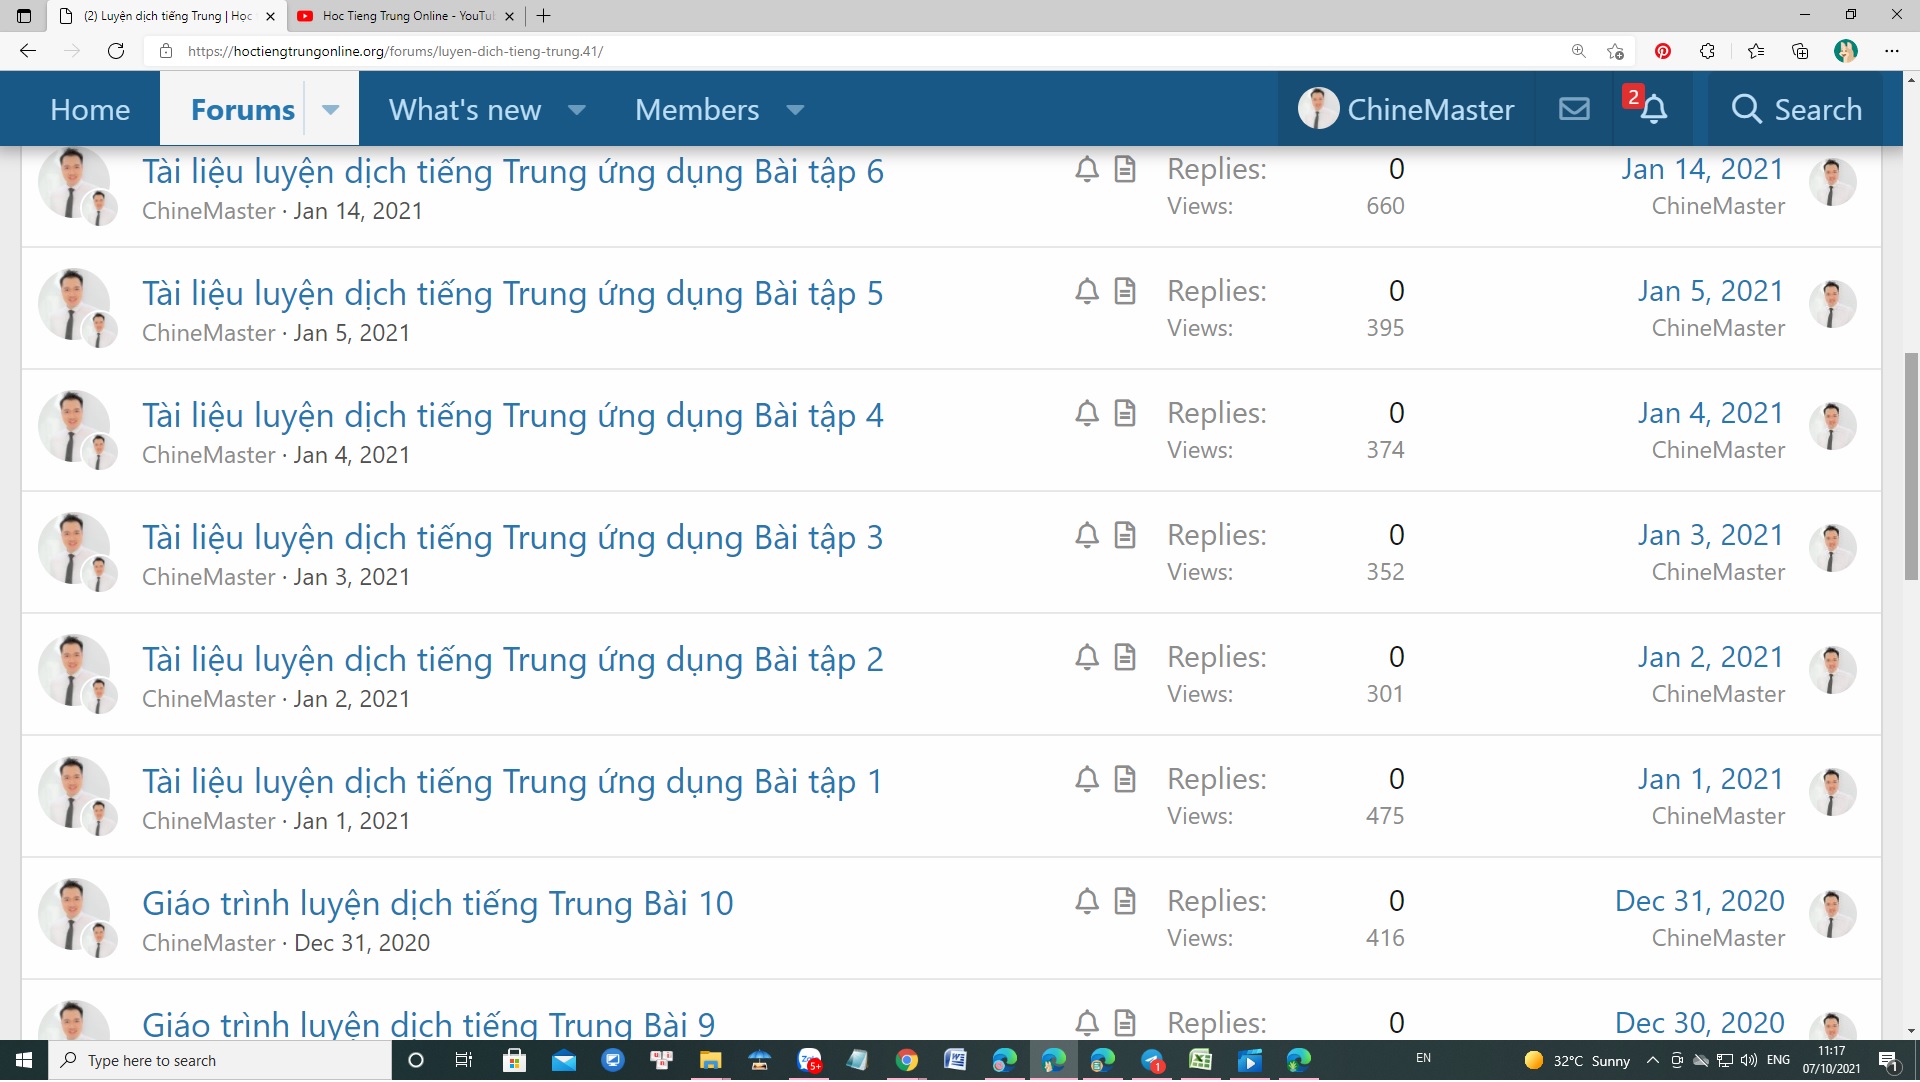 Lớp luyện dịch tiếng Trung thương mại ứng dụng thực tế theo chương trình đào tạo trực tuyến của khóa học tiếng Trung online qua Skype Thầy Vũ chủ giảng